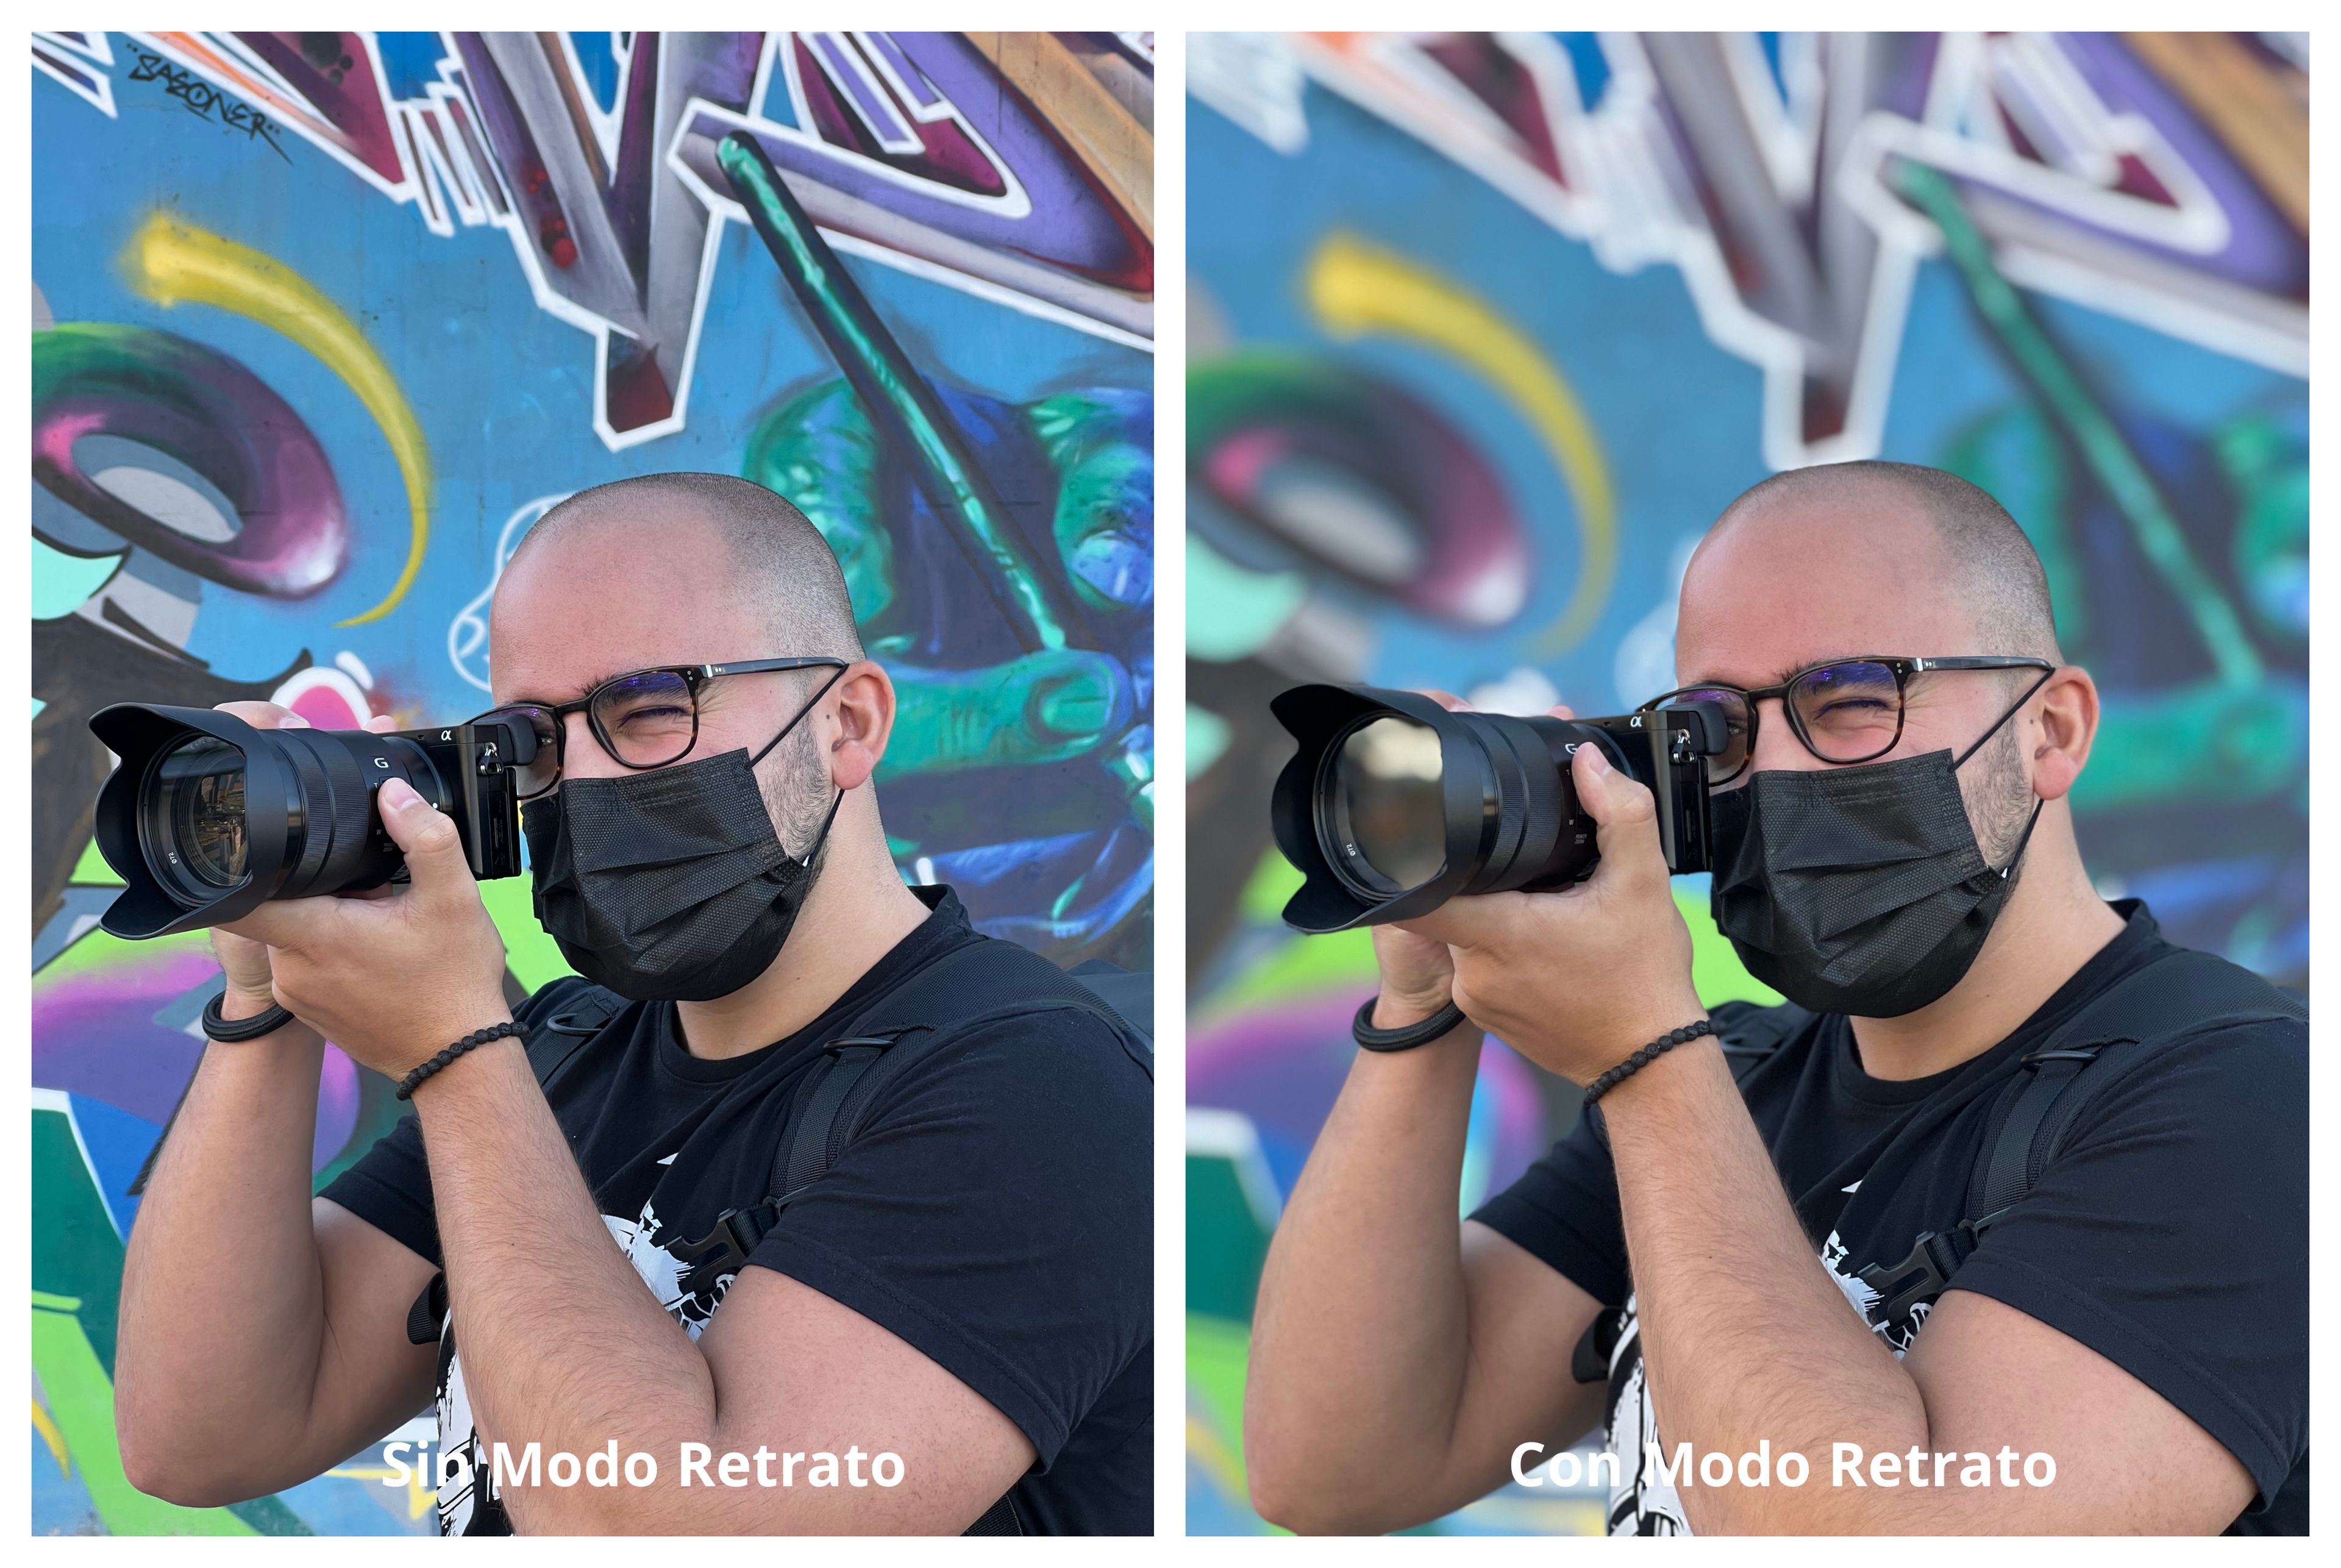 Con/Sin Modo Retrato con la cámara trasera del iPhone 13 Pro Max.